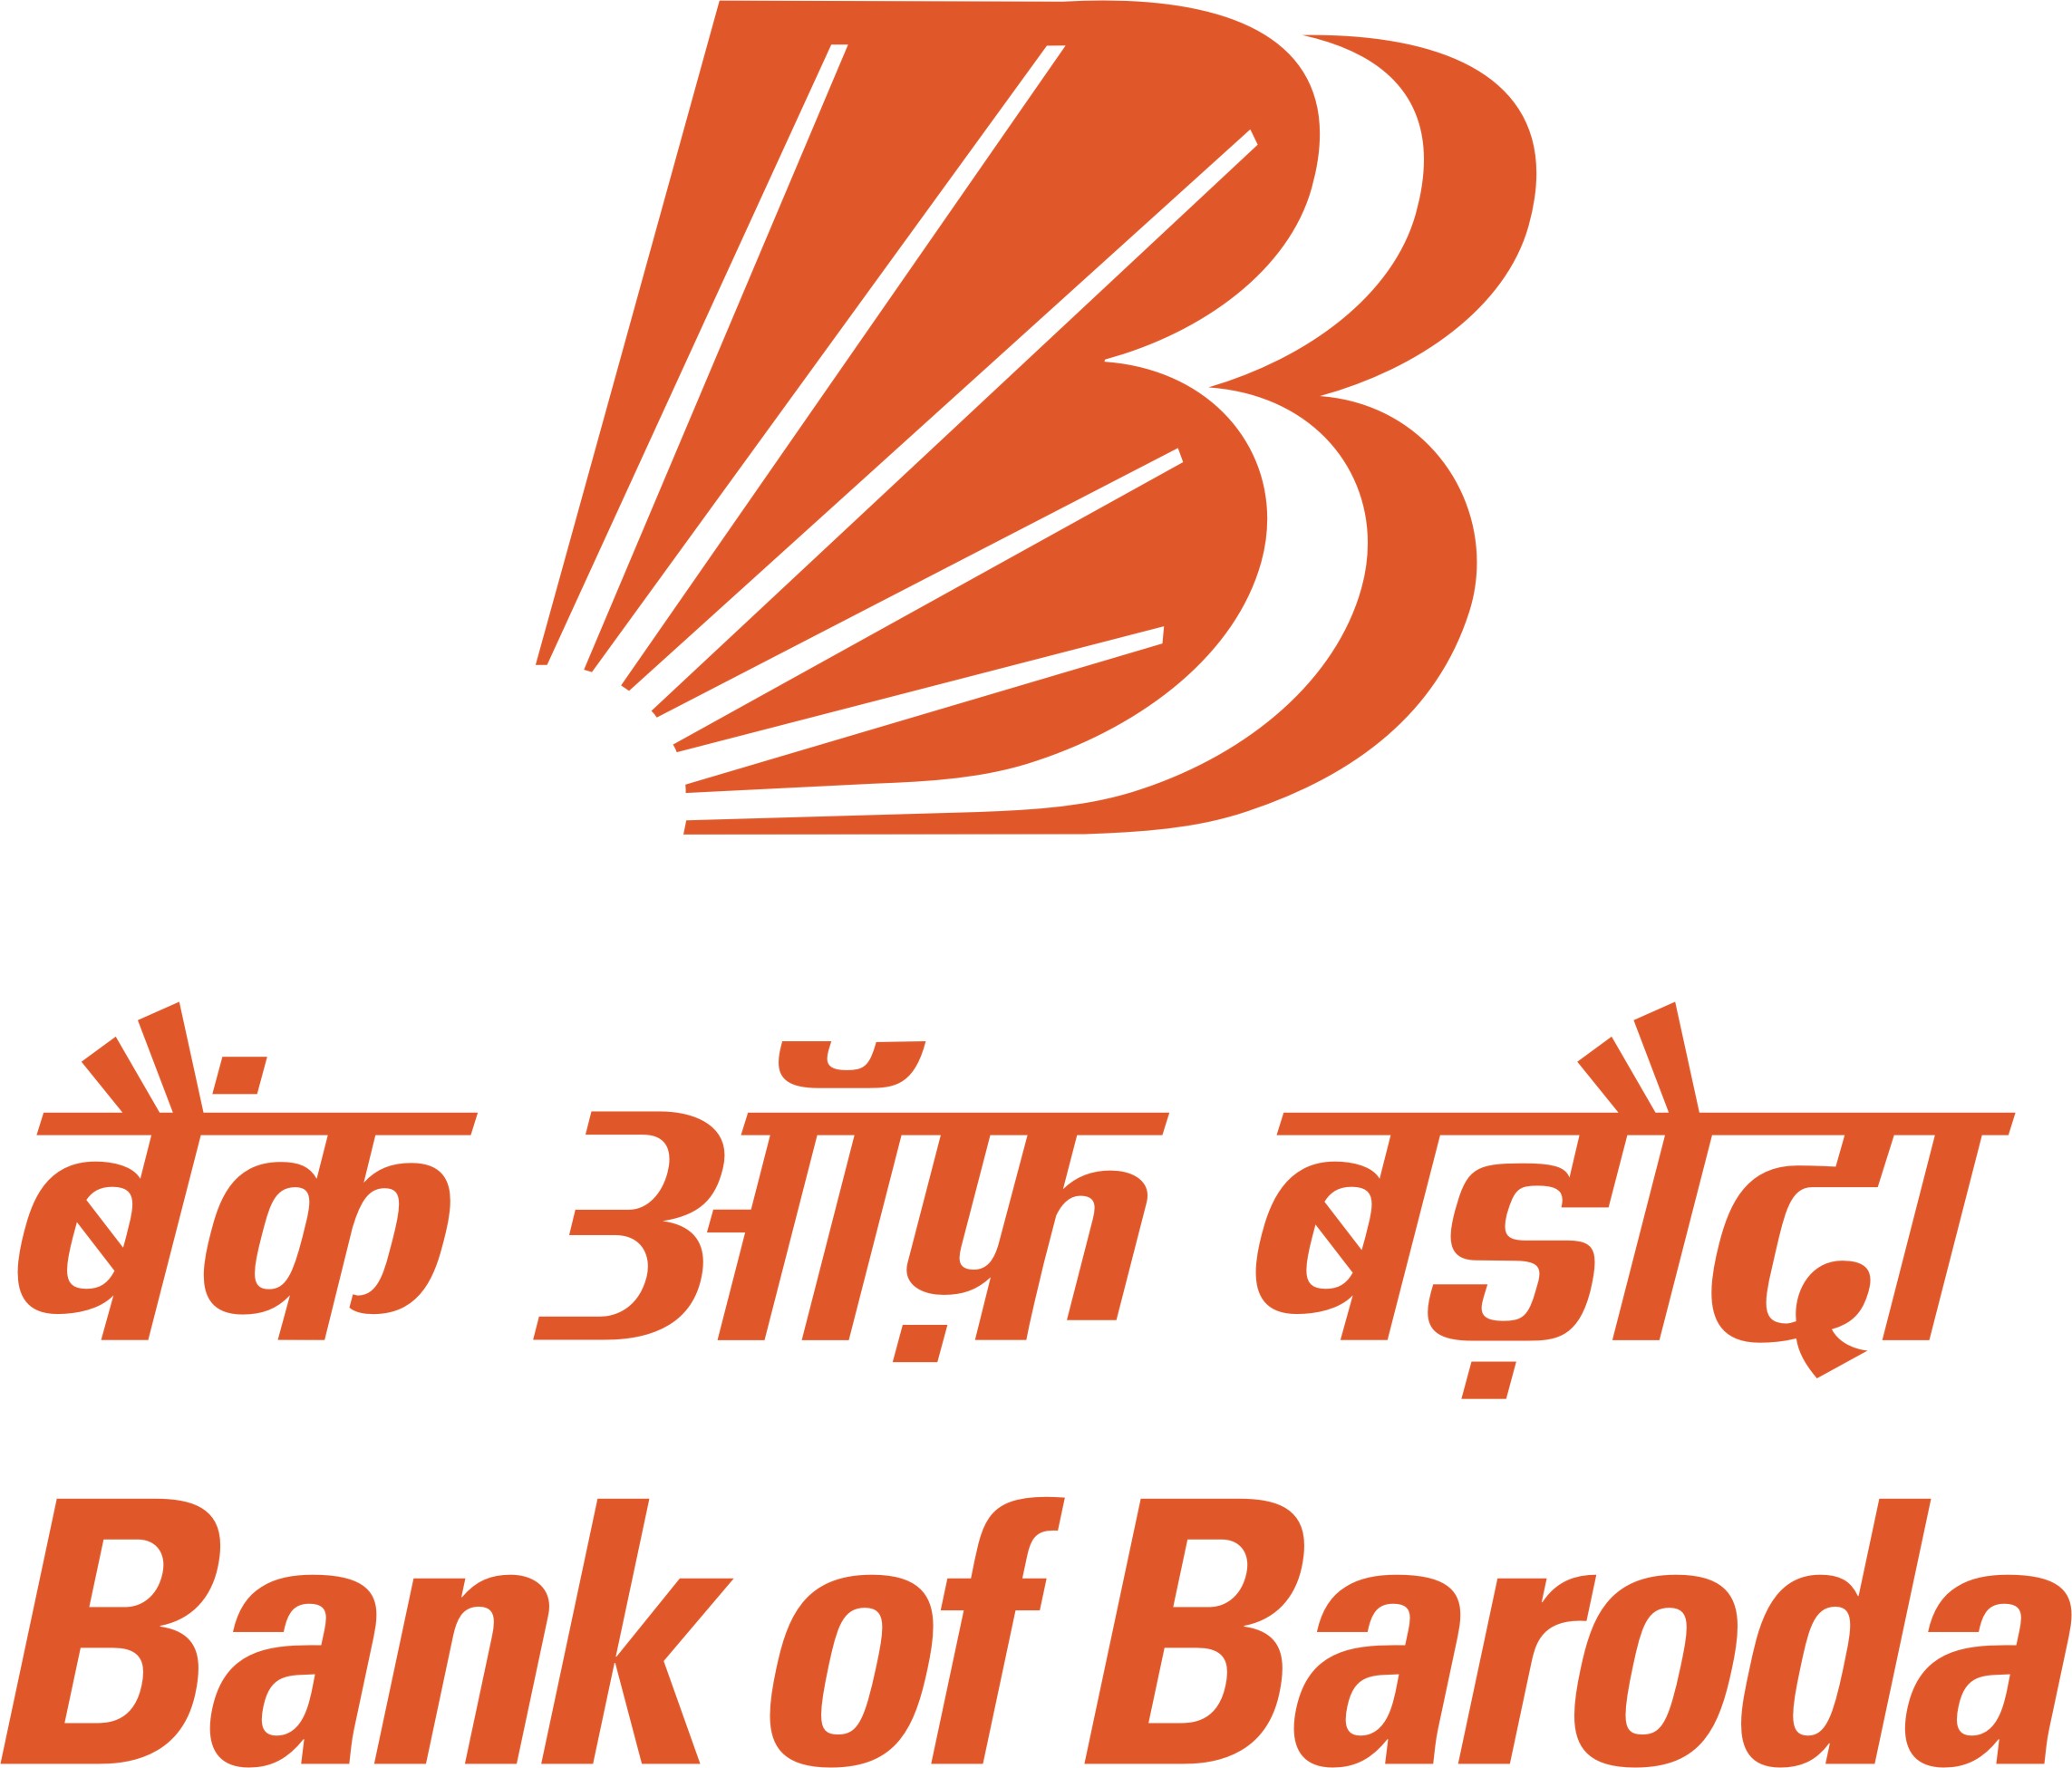 Bank of maharashtra forex branches